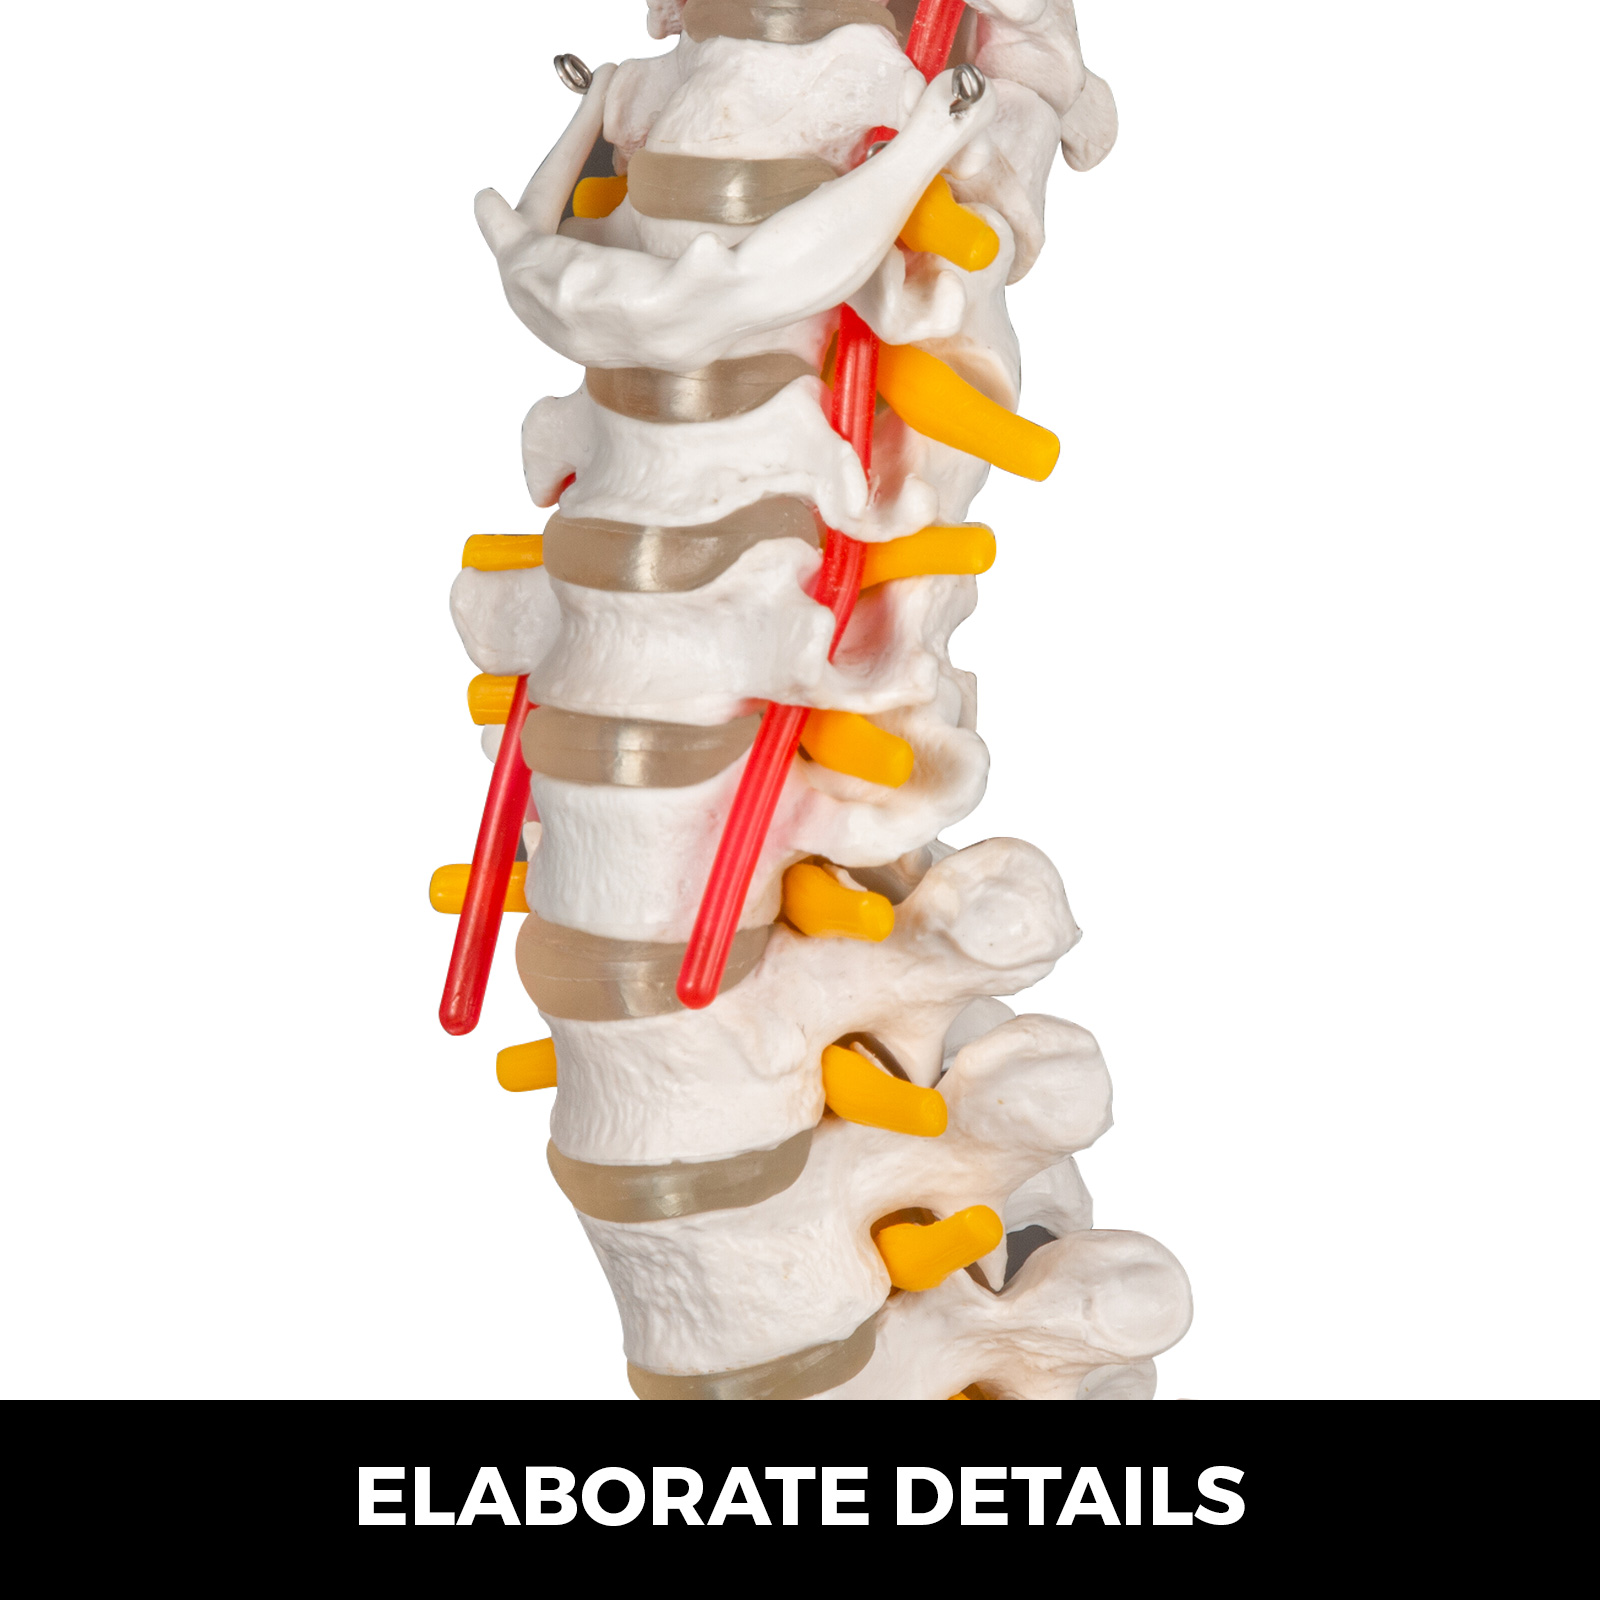 Human Spine Model, Life Size 34 Inch Spine Model, Flexible Spine Anatomical  Model with Vertebrae, Cervical Spine, Lumbar Spine